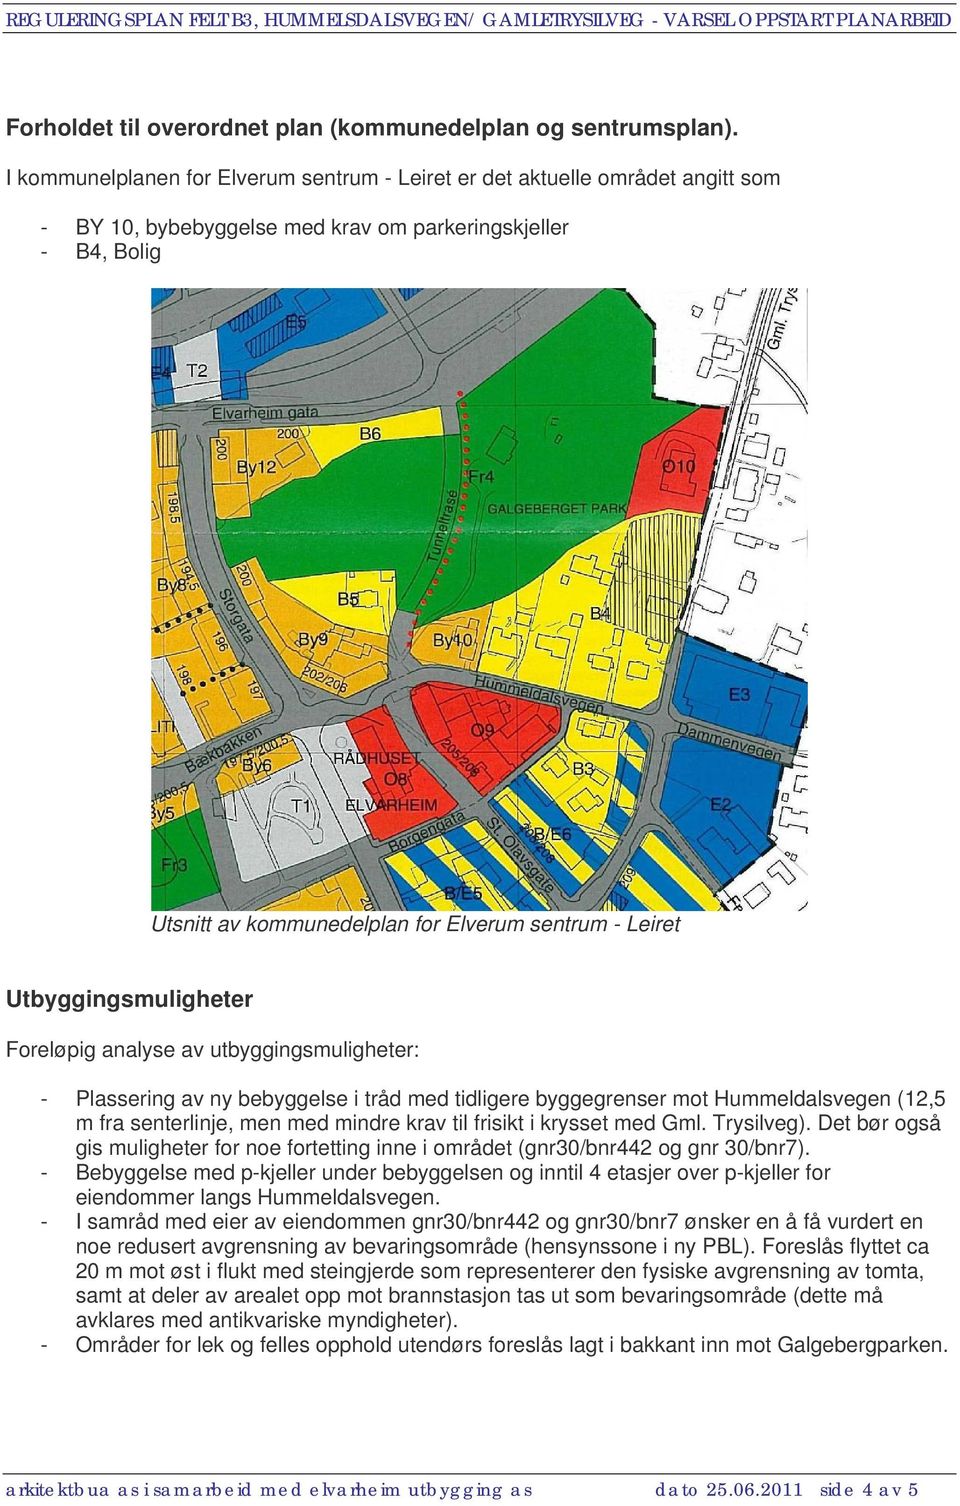 Utbyggingsmuligheter Foreløpig analyse av utbyggingsmuligheter: - Plassering av ny bebyggelse i tråd med tidligere byggegrenser mot Hummeldalsvegen (12,5 m fra senterlinje, men med mindre krav til